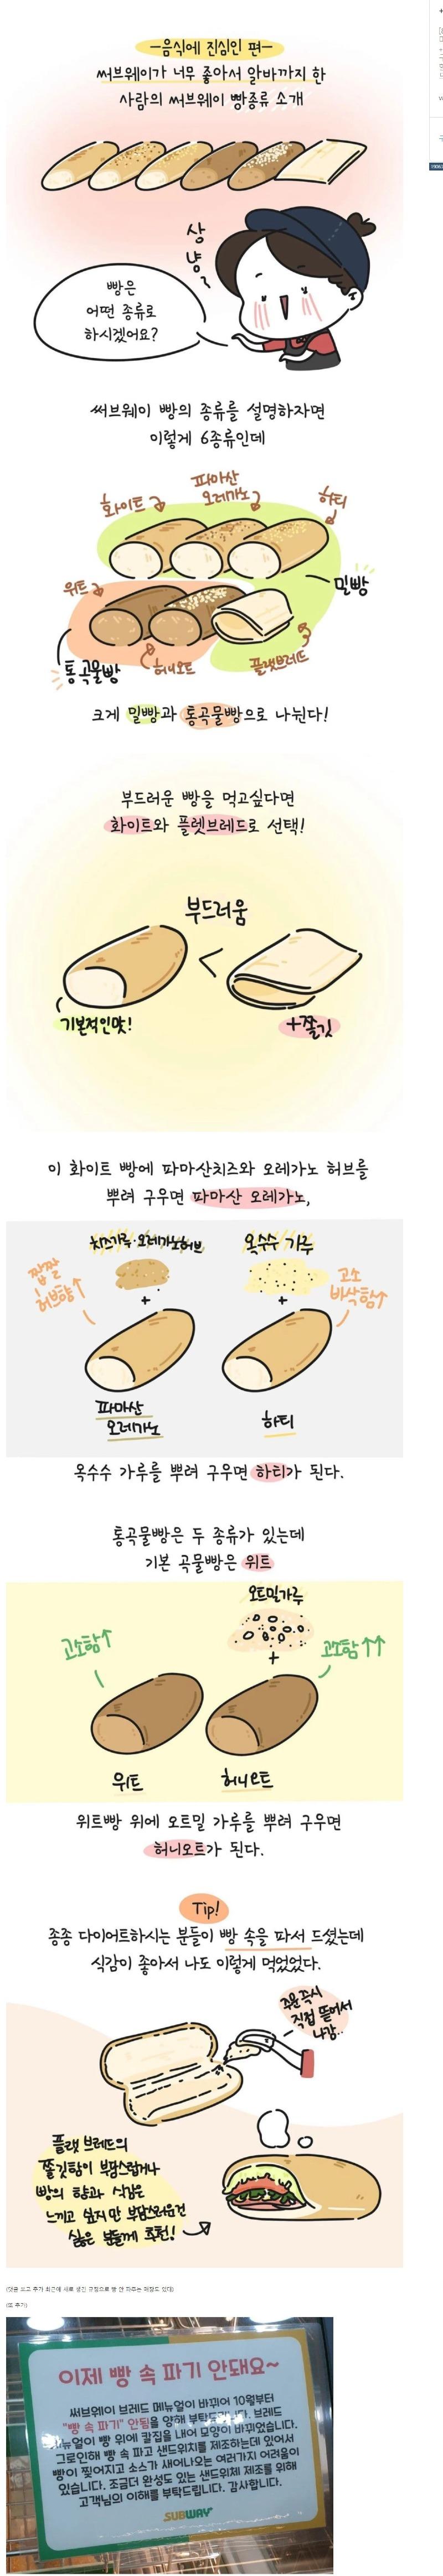 서브웨이 빵 종류 소개.jpg